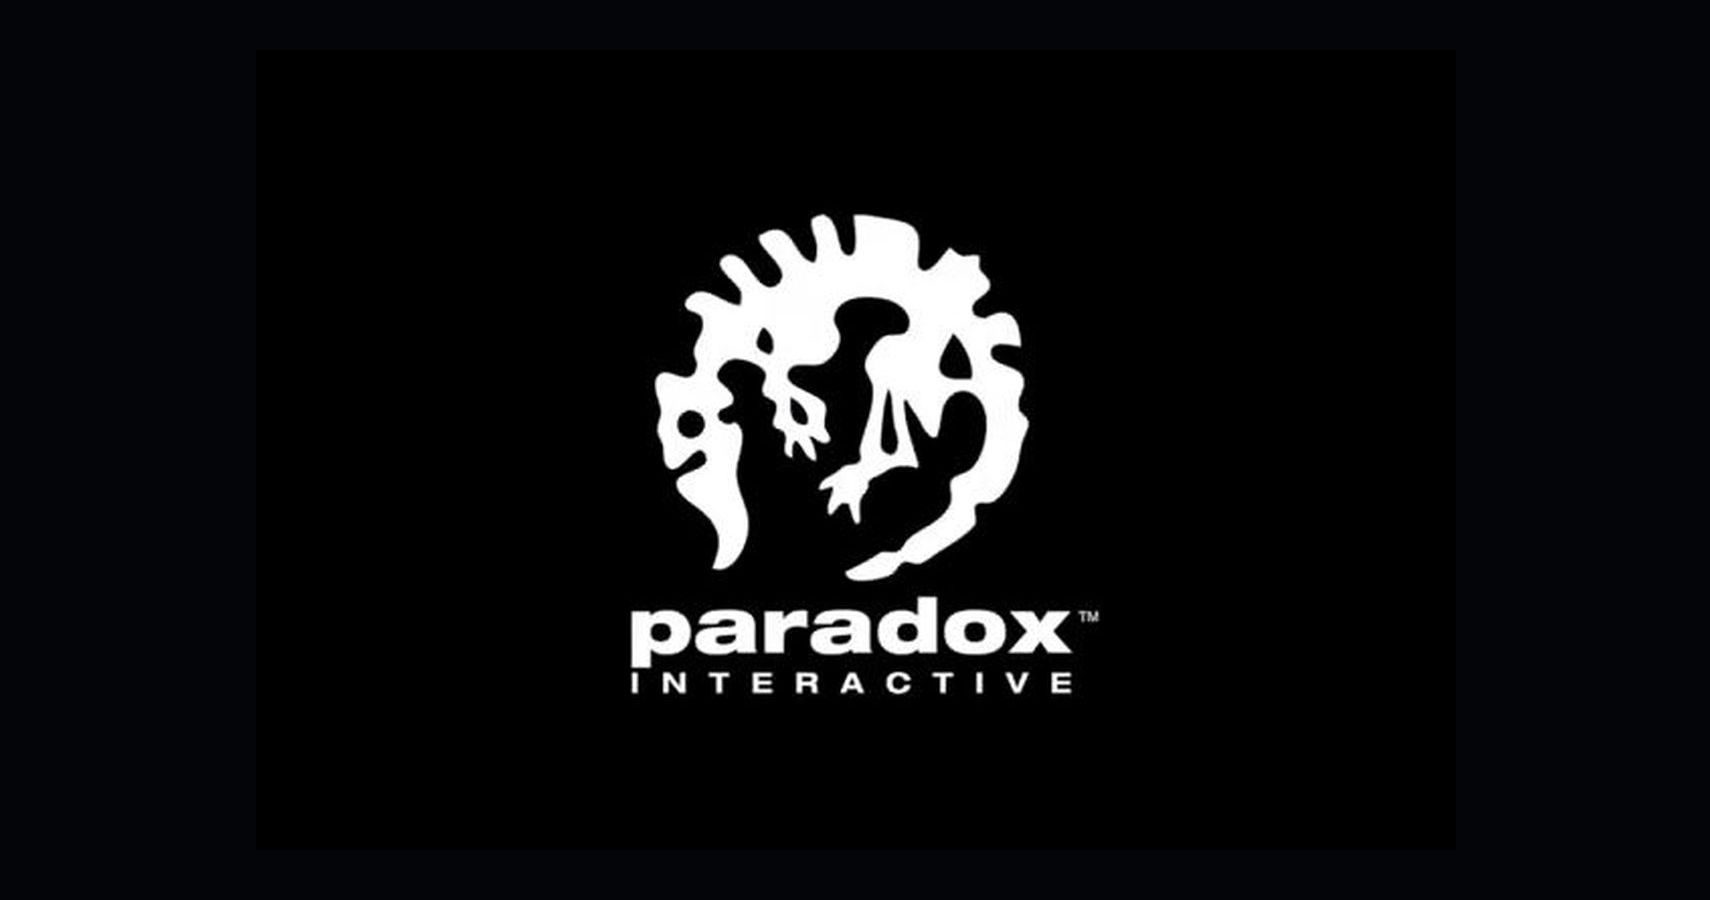 paradox-staff-mistreatment-3579175